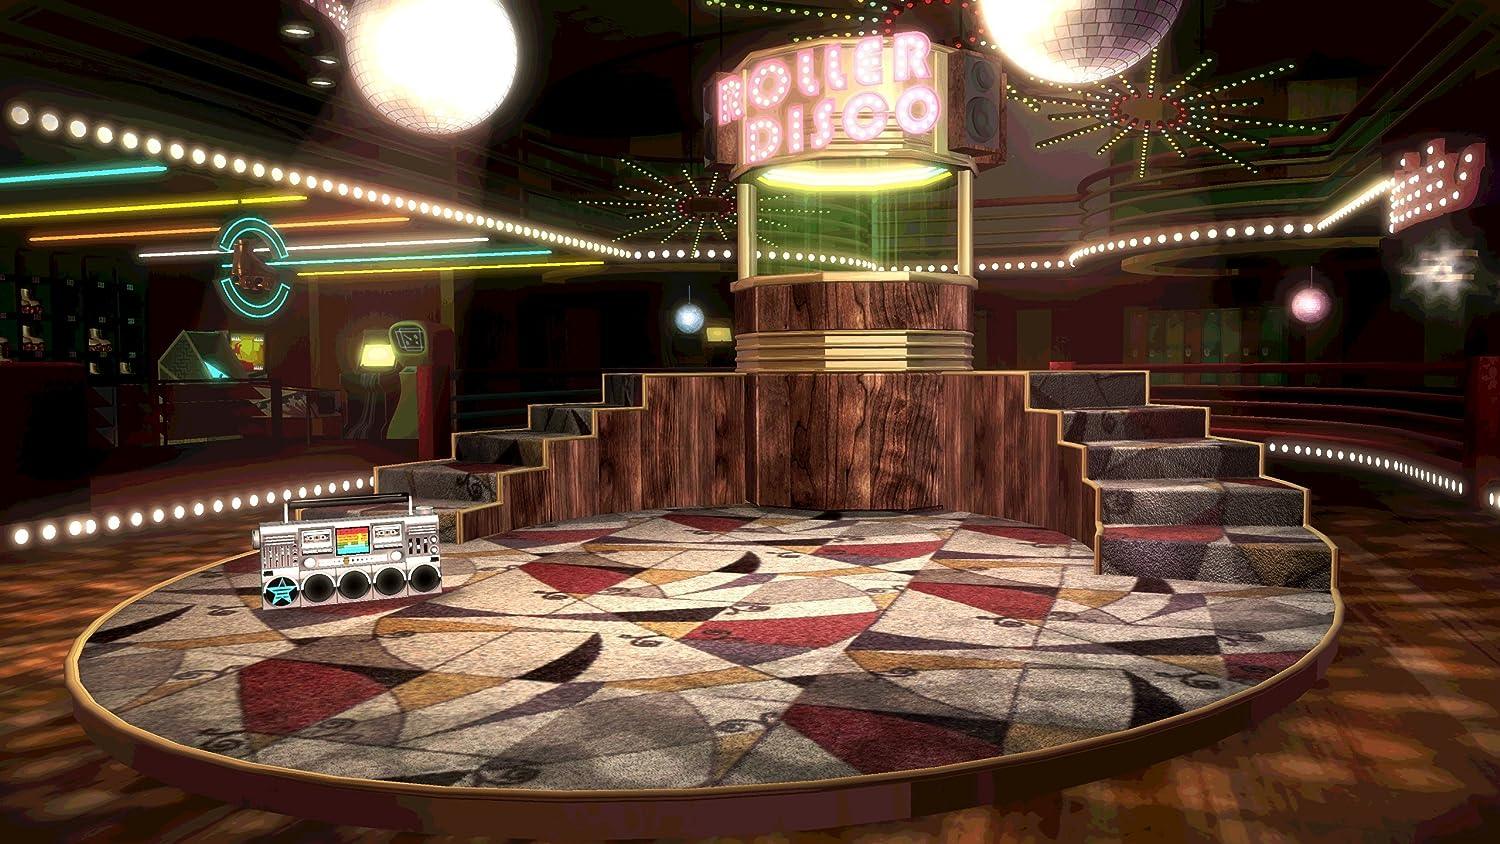 Jogo Dance Central 3 Usado - Xbox 360 - Toygames